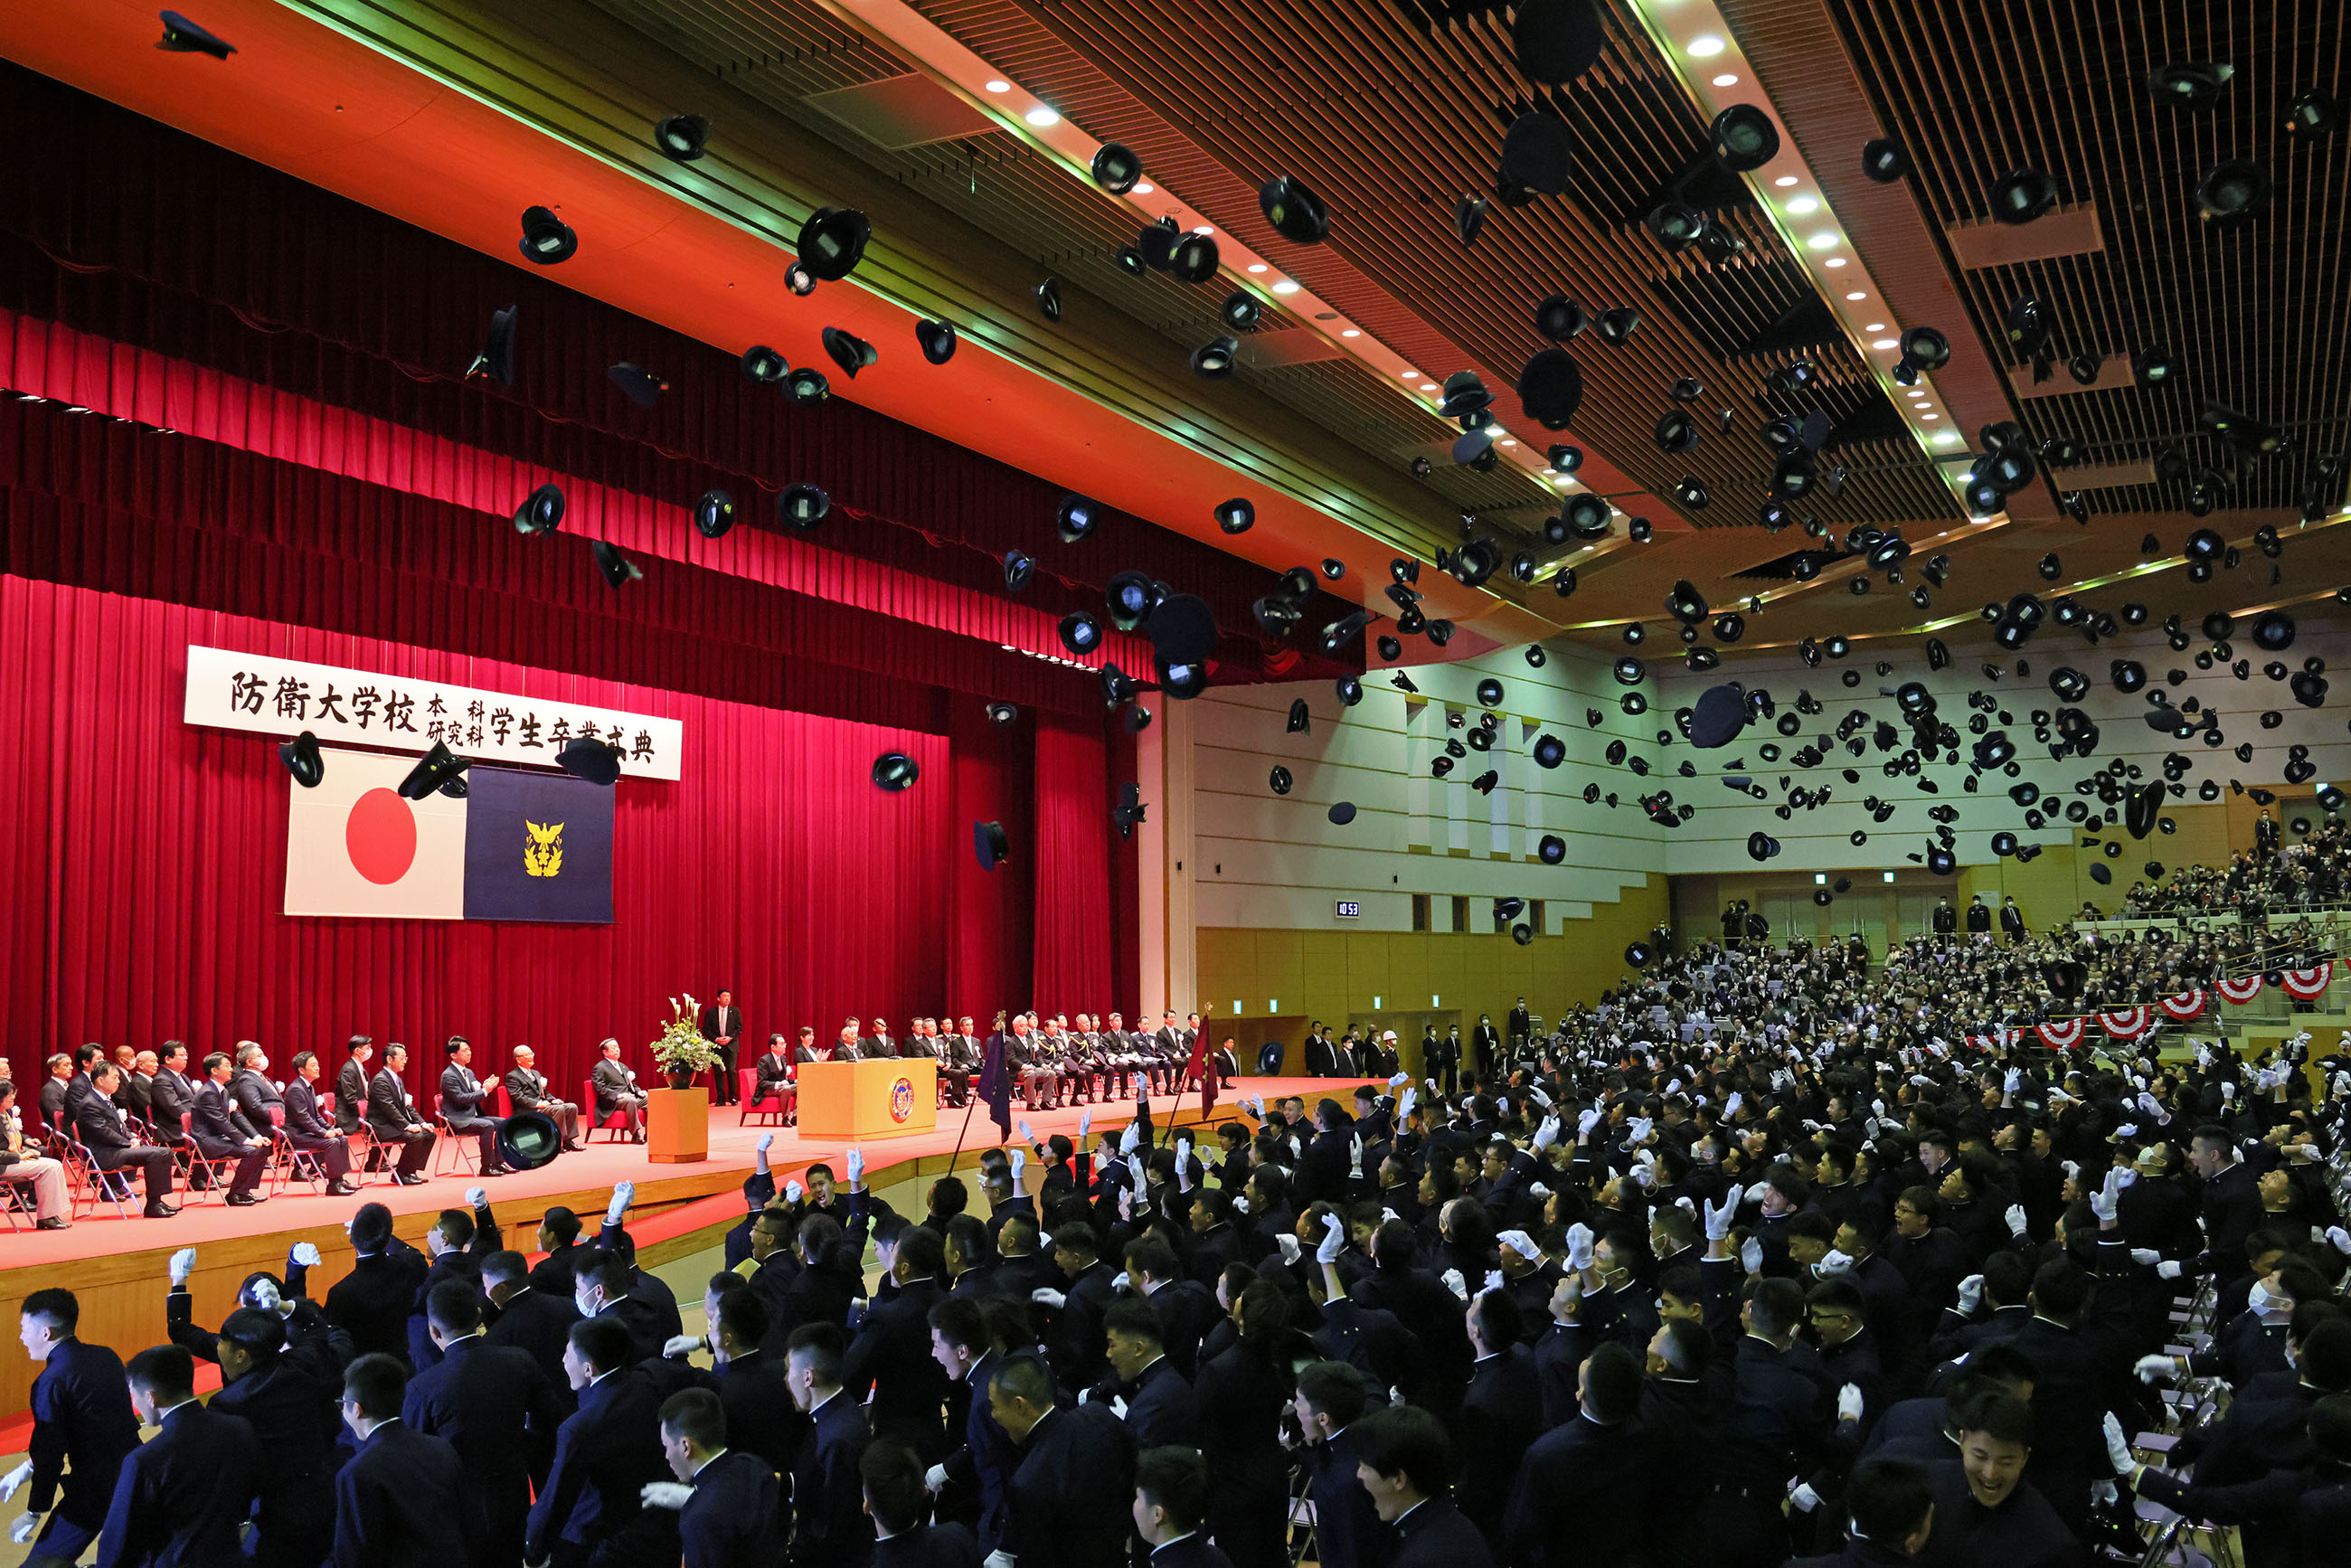 Prime Minister Kishida sending off the graduates